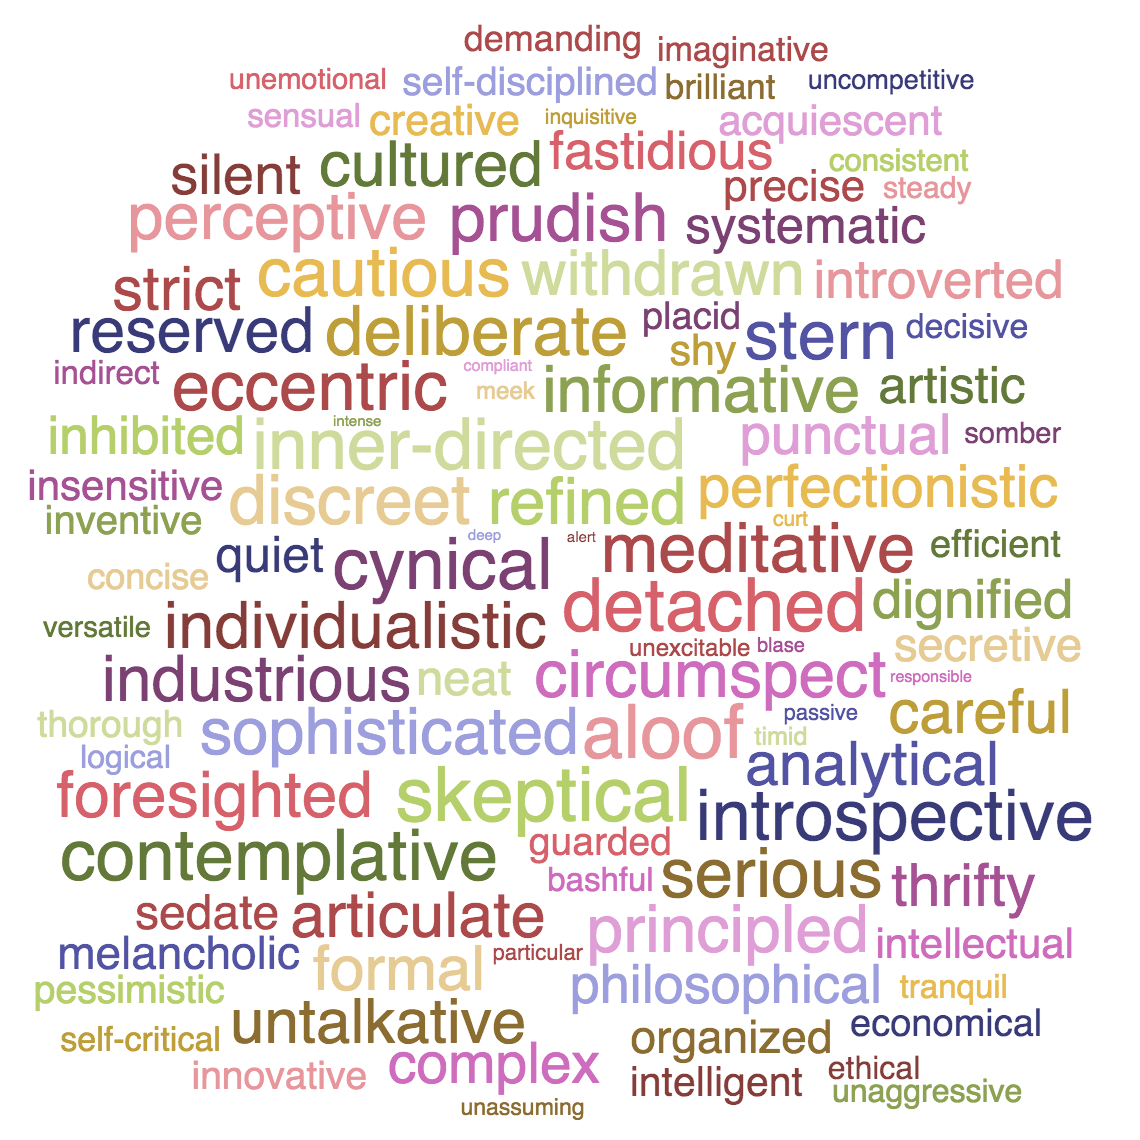 Adjectives describing the INTJ